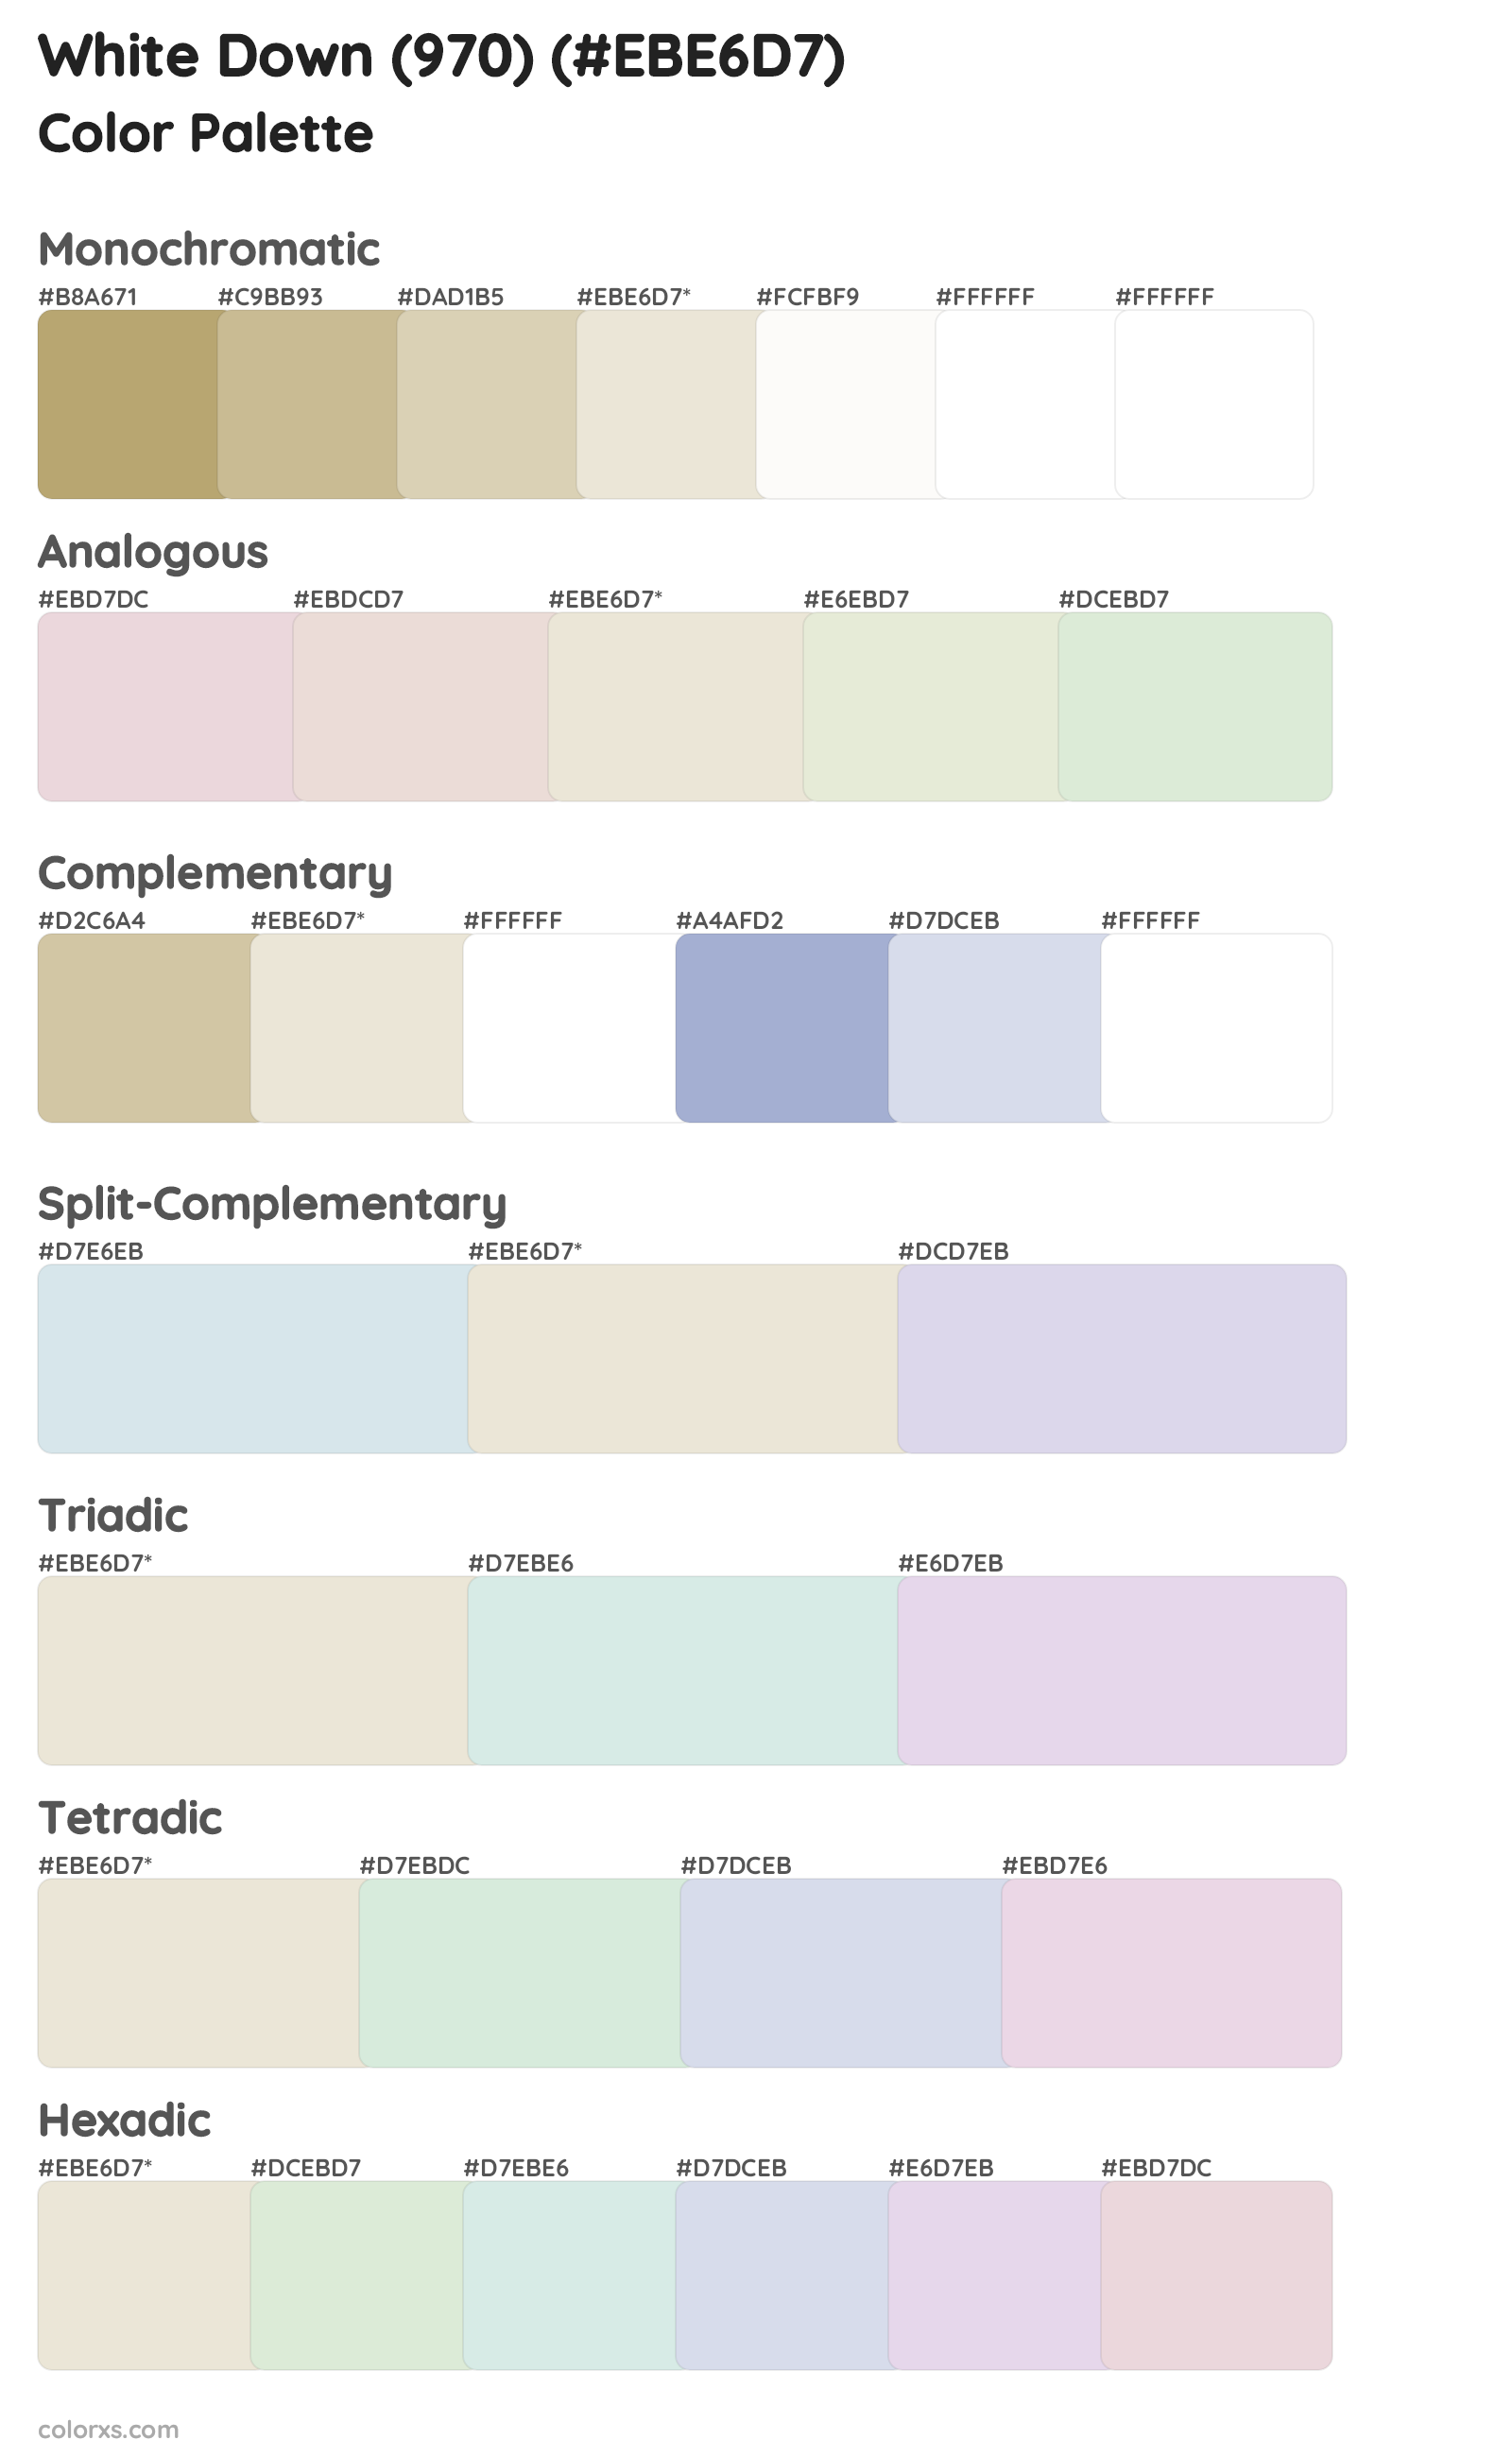 White Down (970) Color Scheme Palettes